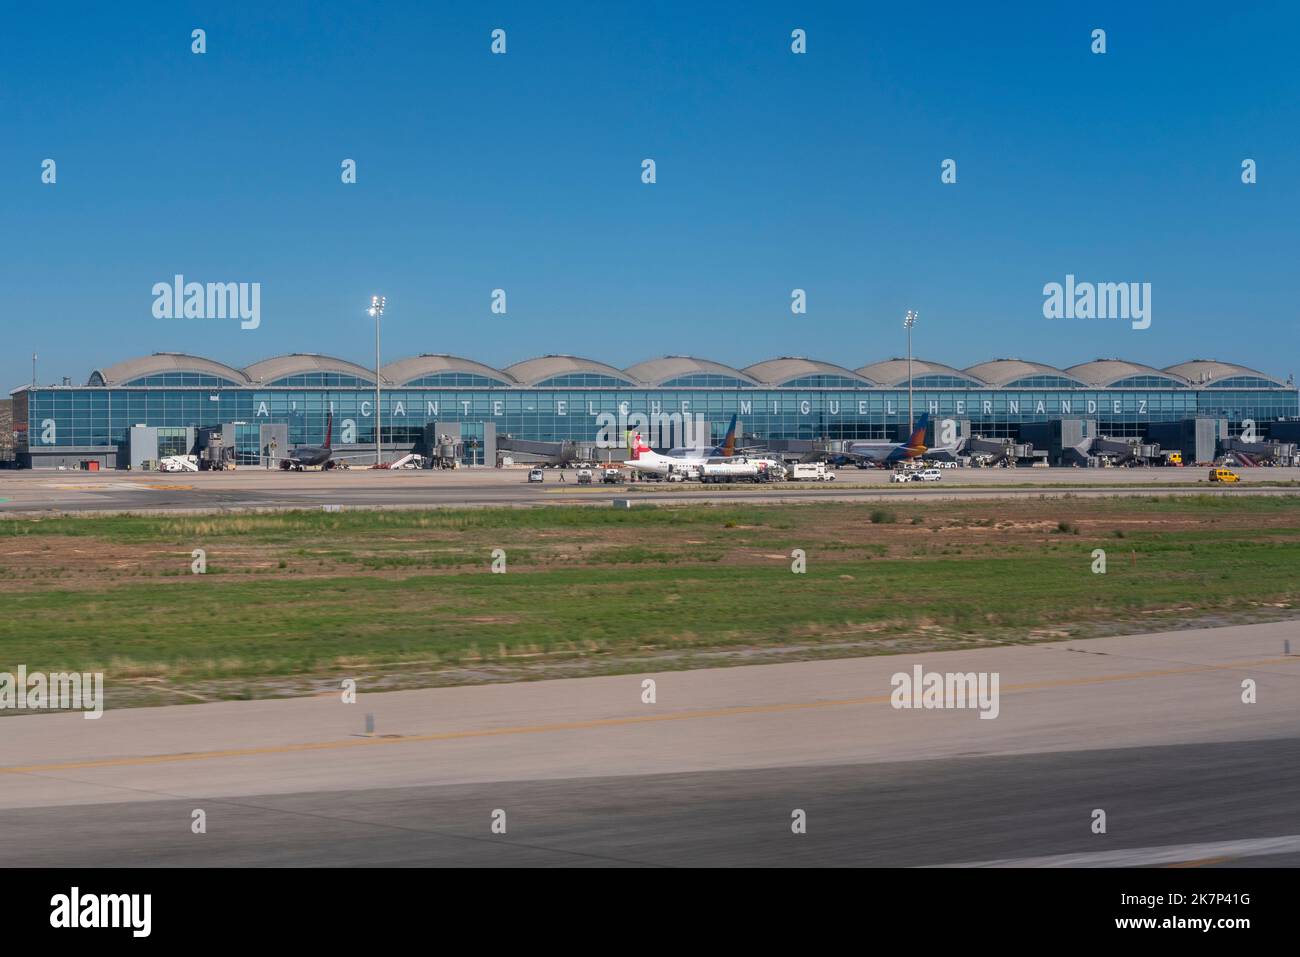 Aéroport d'Alicante Elche Miguel Hernández, Espagne, Europe. En 2021, l'aéroport est rebaptisé Aeropuerto de Alicante–Elche Miguel Hernández Banque D'Images